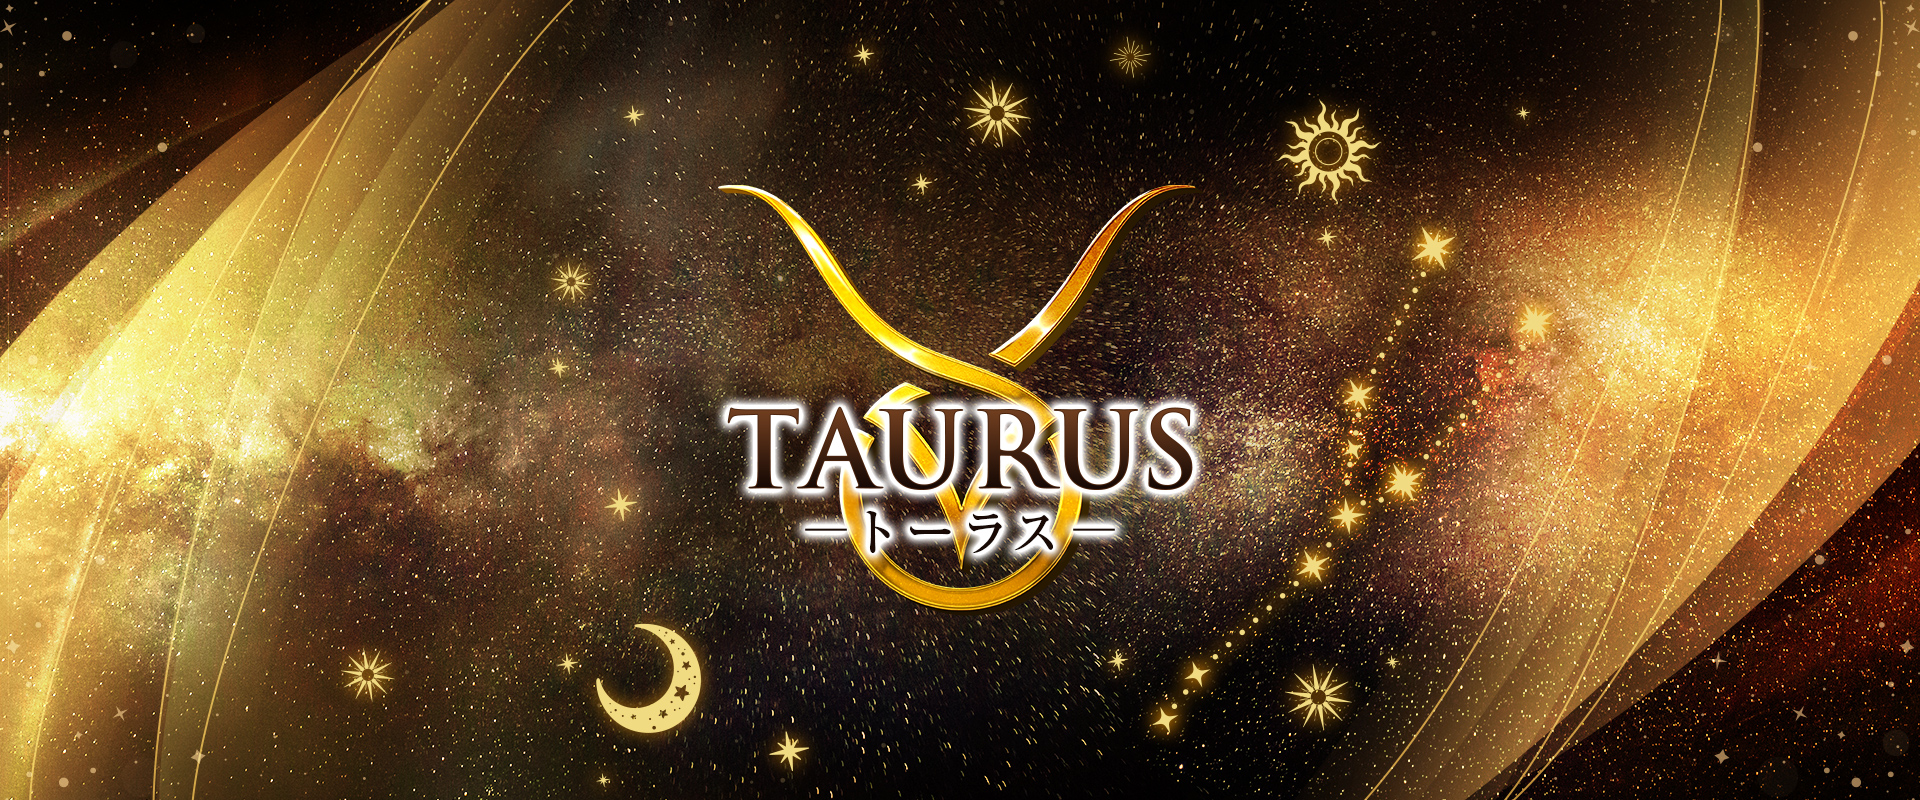 Taurus -トーラス-